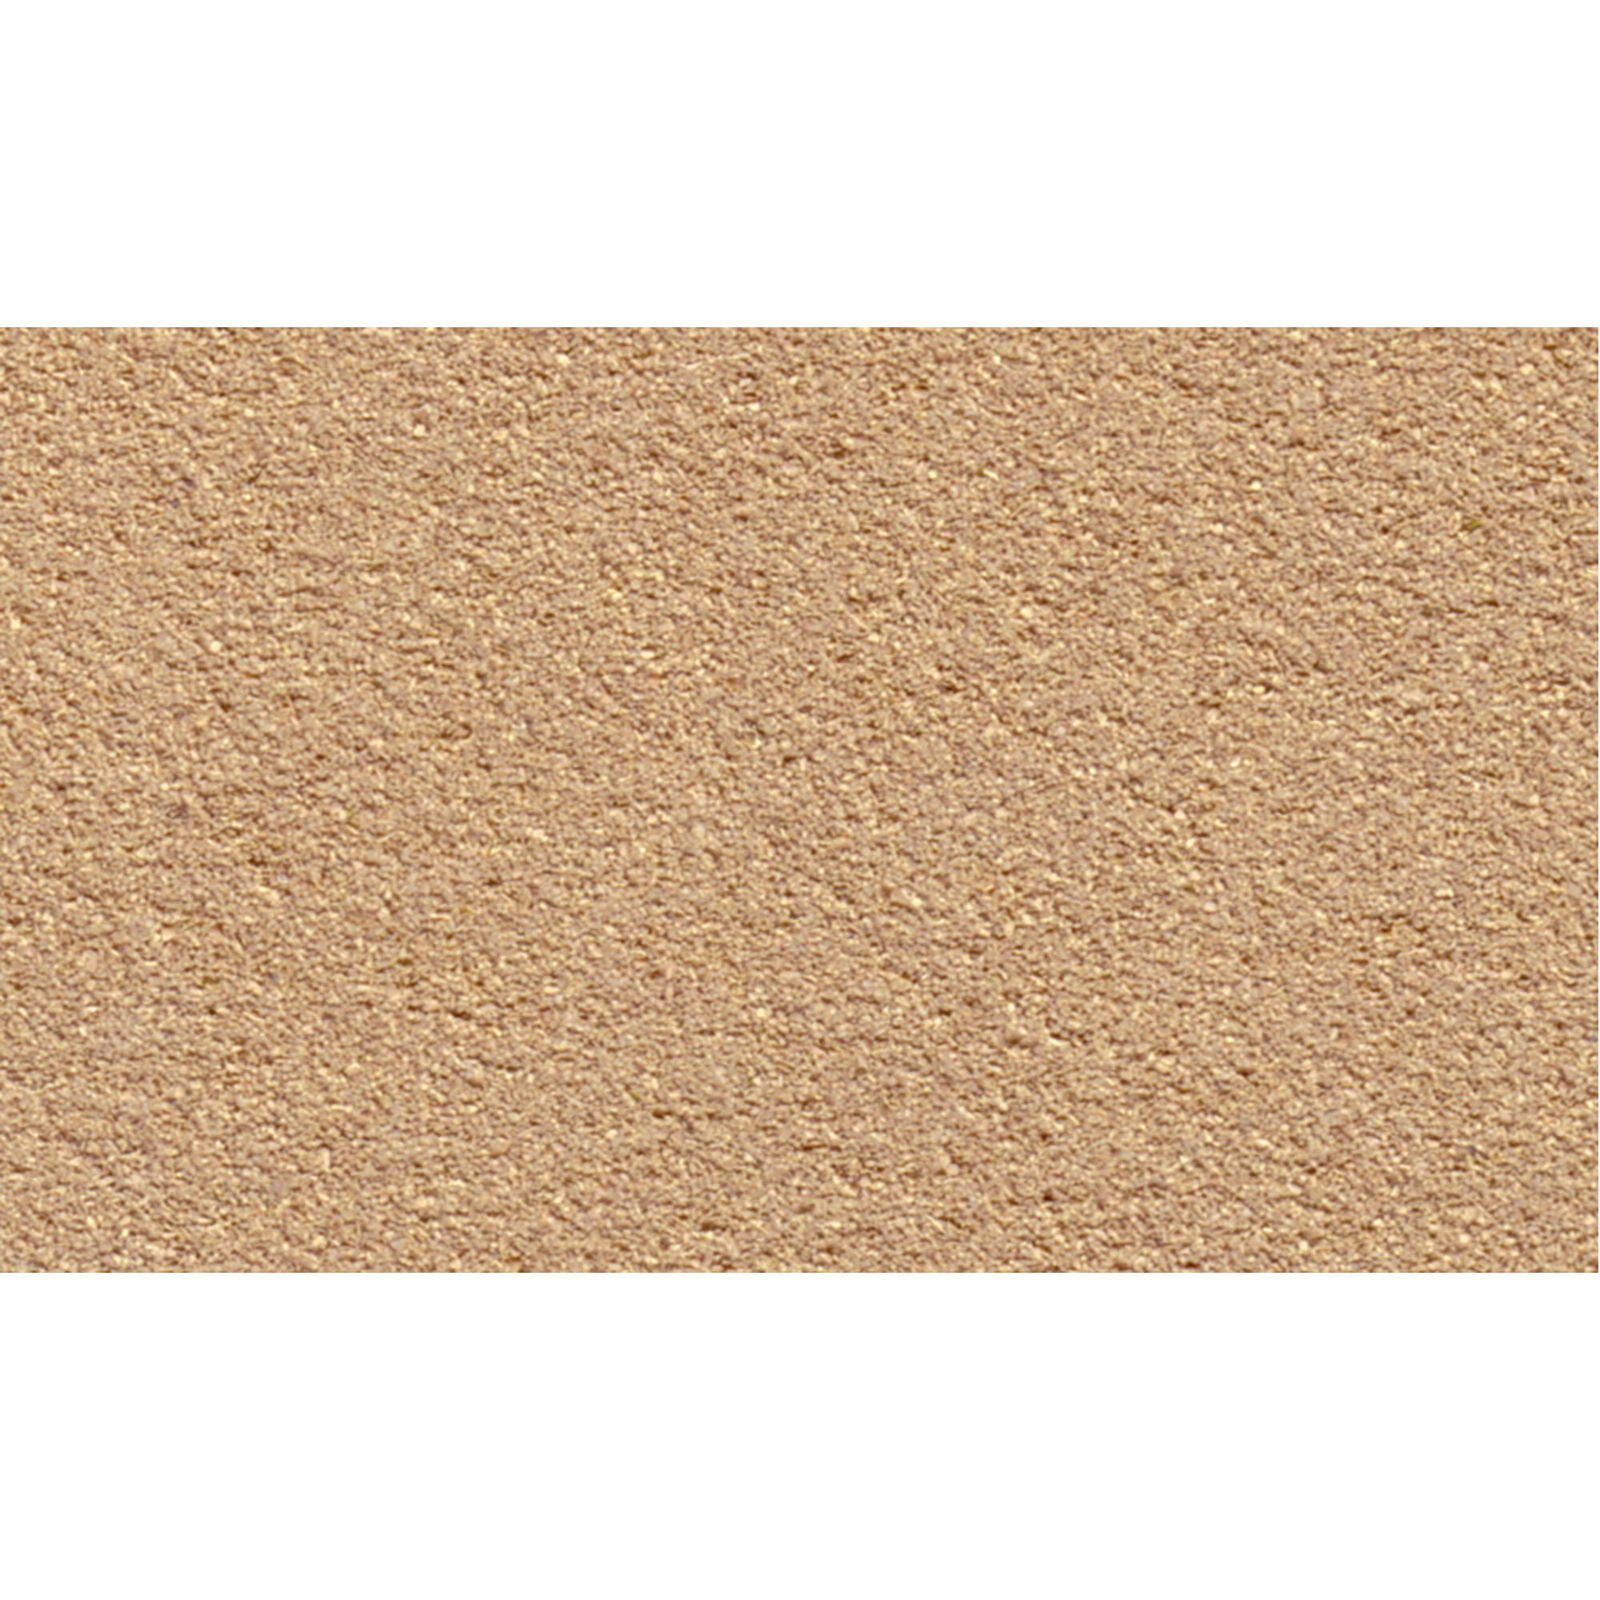 33" x 50" Grass Mat, Desert Sand